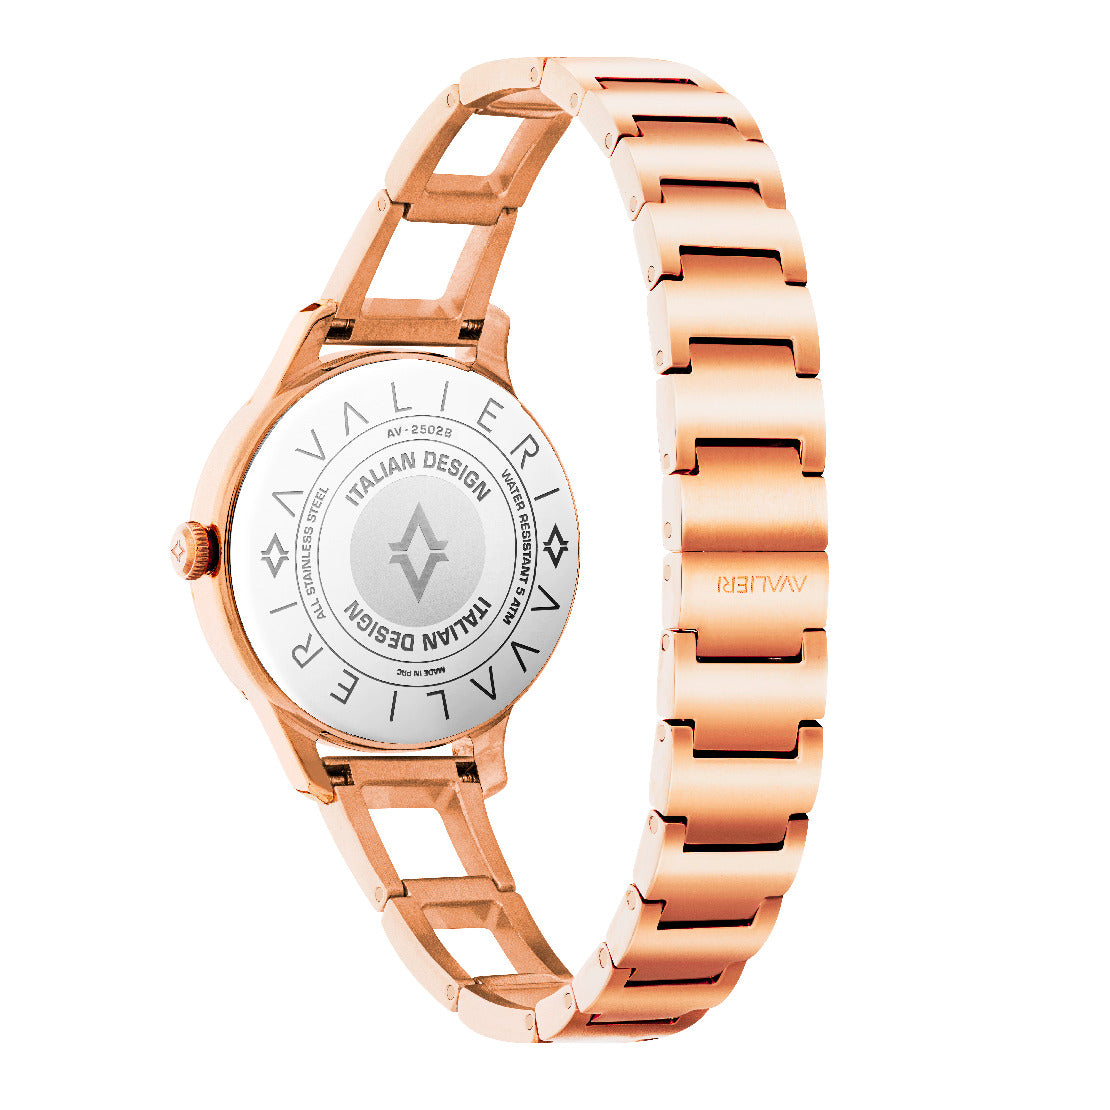 Avalieri Women's Quartz Watch Rose Gold Dial - AV-2502B